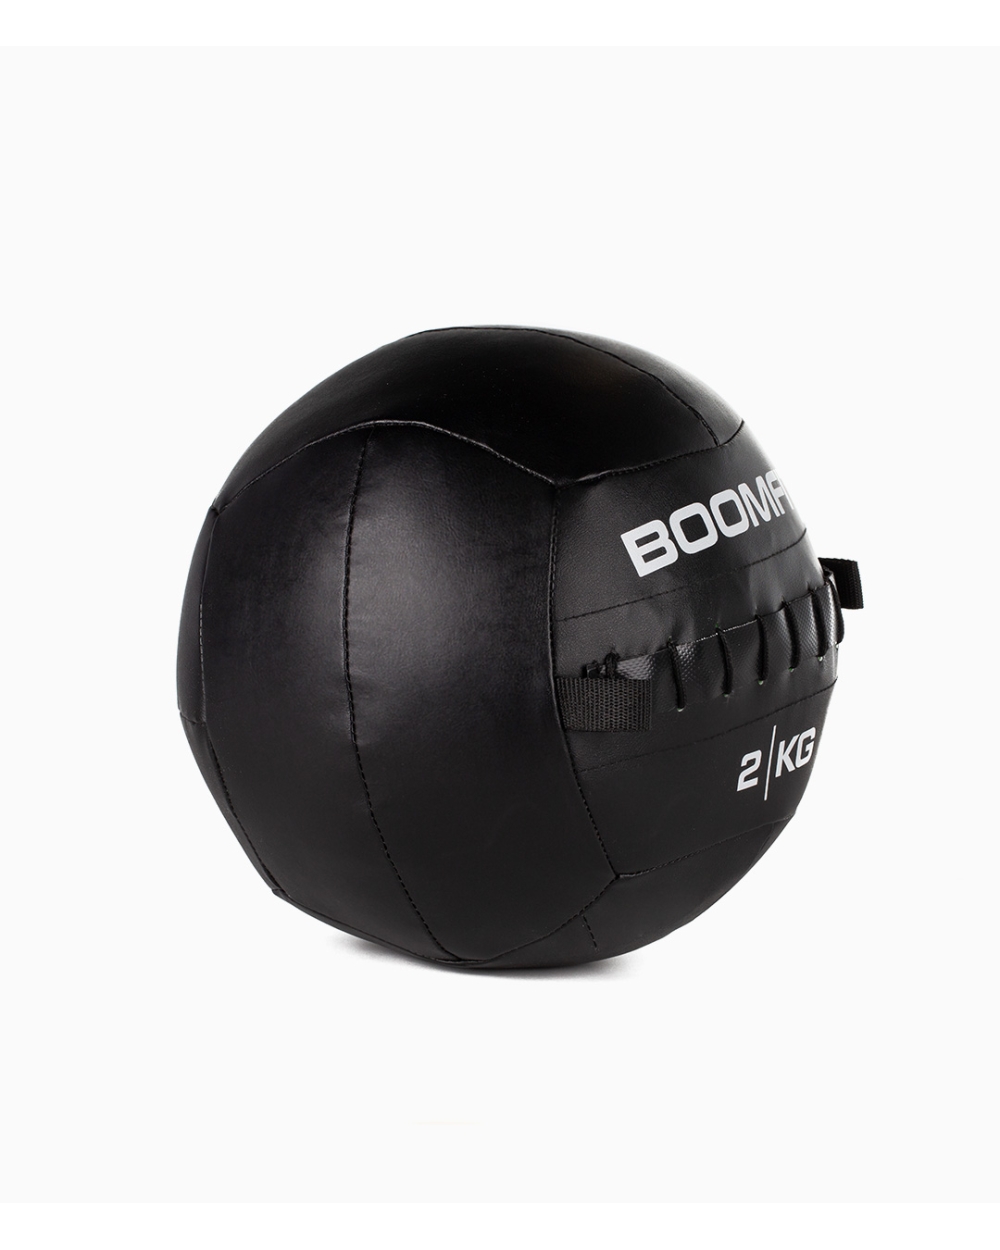 Wall Ball 2kg - Boomfit